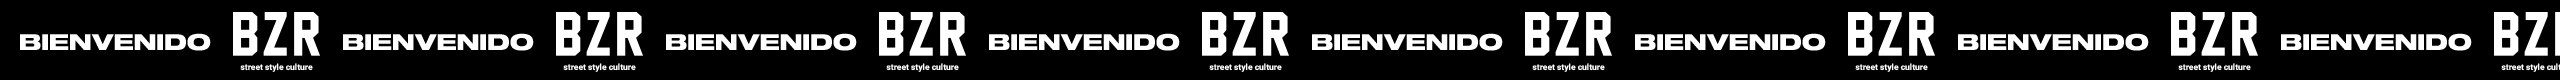 Video con el logo de  BZR Street style culture en blanco y la palabra bienvenido en blanco sobre fondo negro